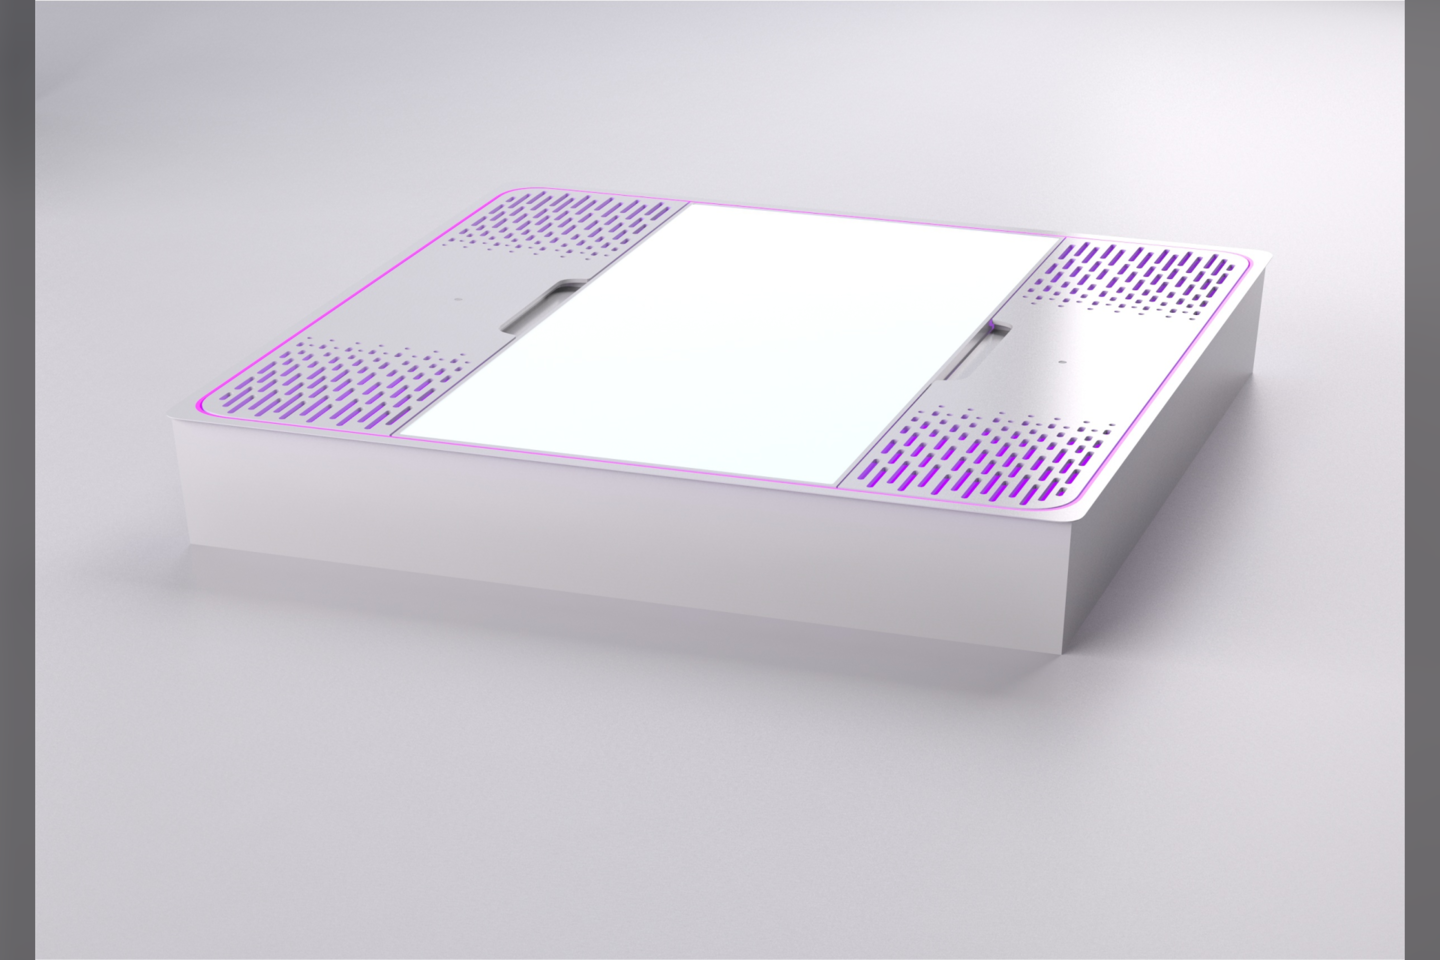  Taikomas sprendimas remiasi tam tikrų ultravioletinių (UV) bangų ilgio pagrindu sukurtais diodais (LED).<br>  „Šviesos gamyba“ nuotr.